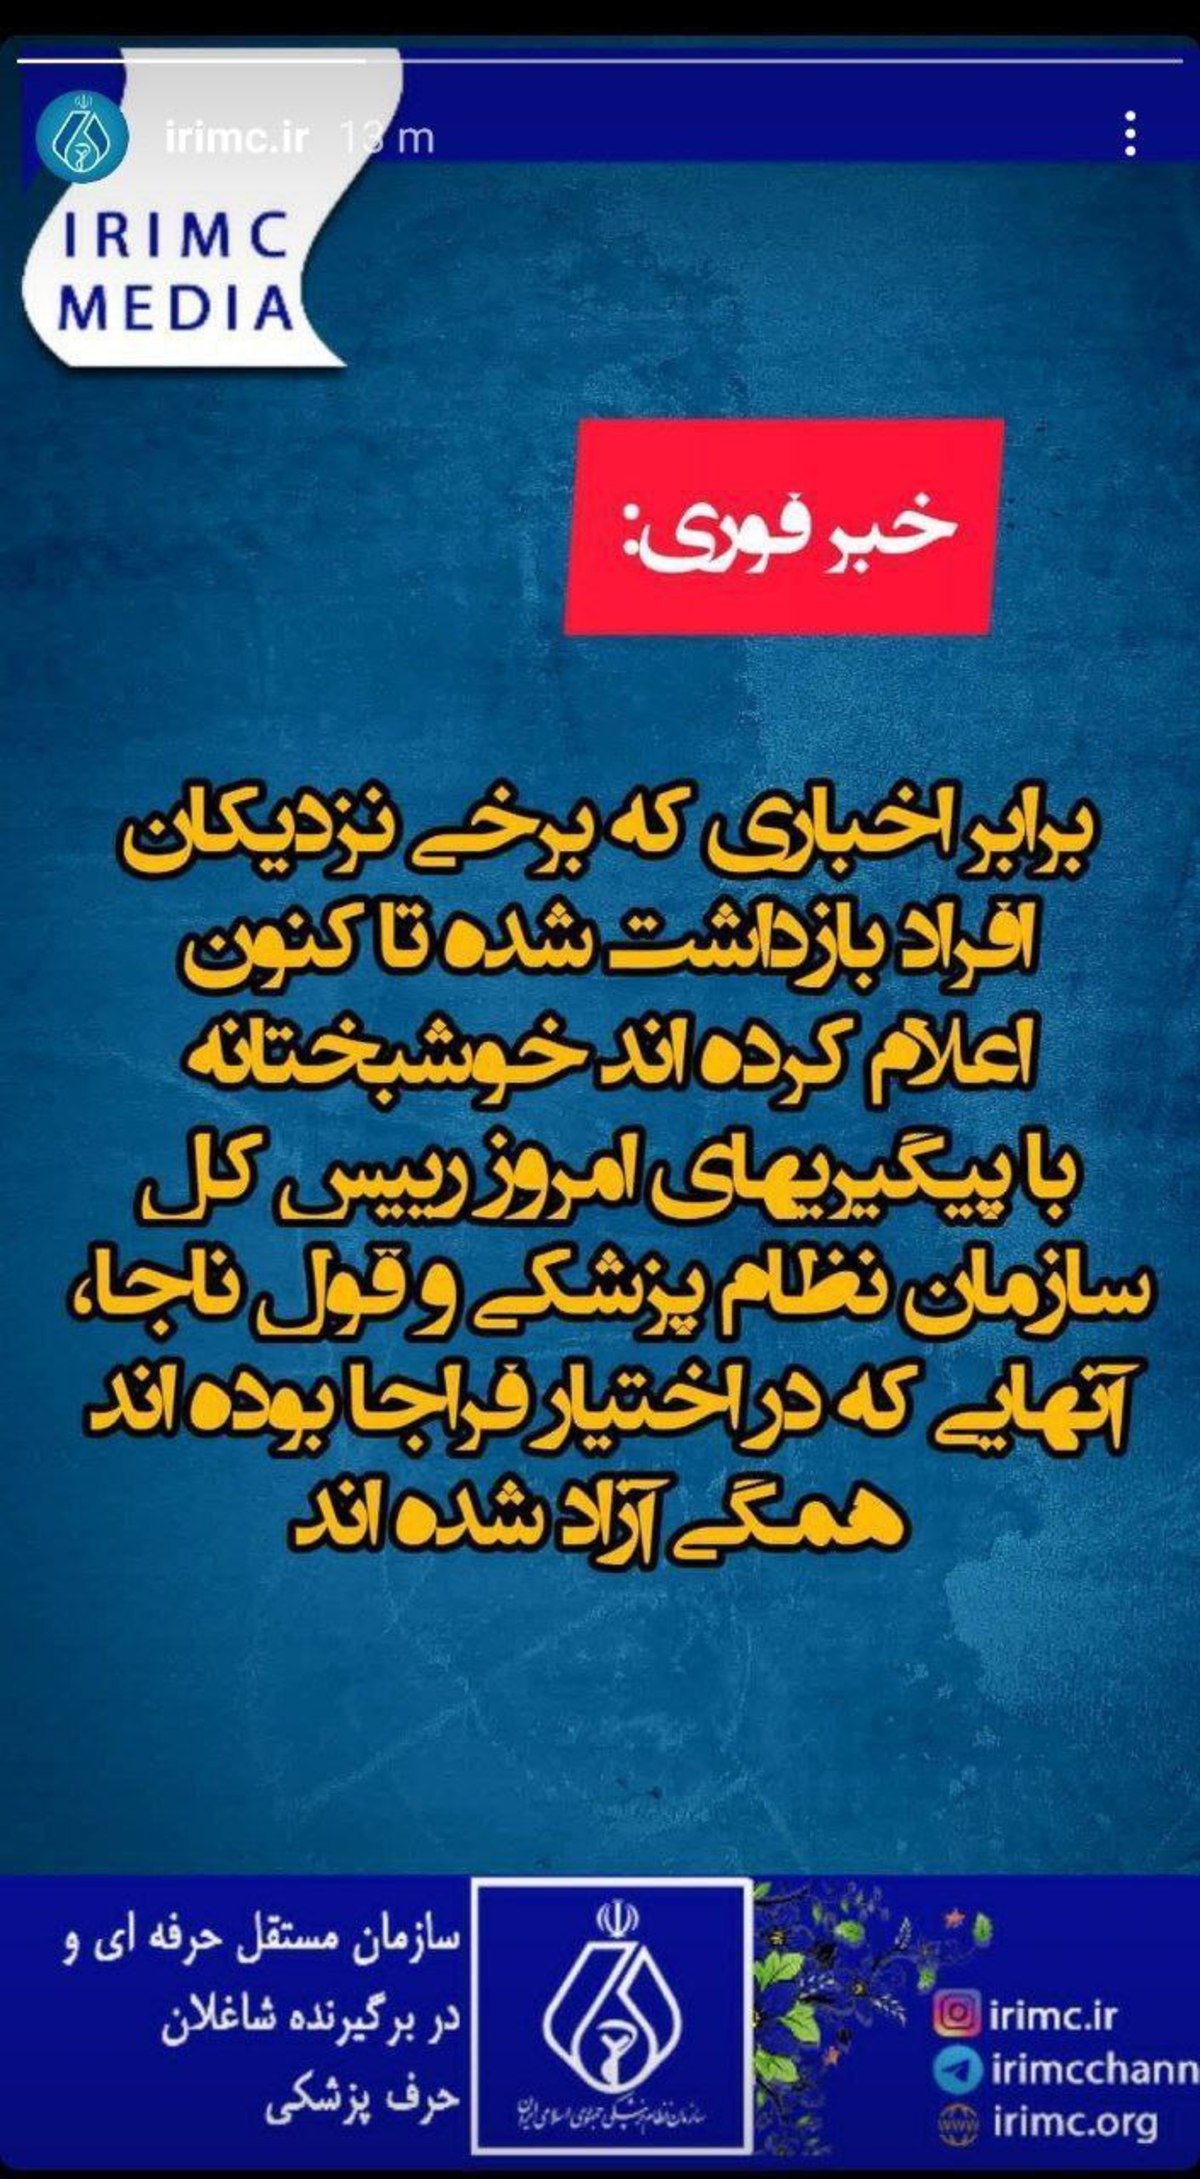 سازمان نظام پزشکی ایران از آزادی پزشکان بازداشت شده در اختیار فراجا خبر داد